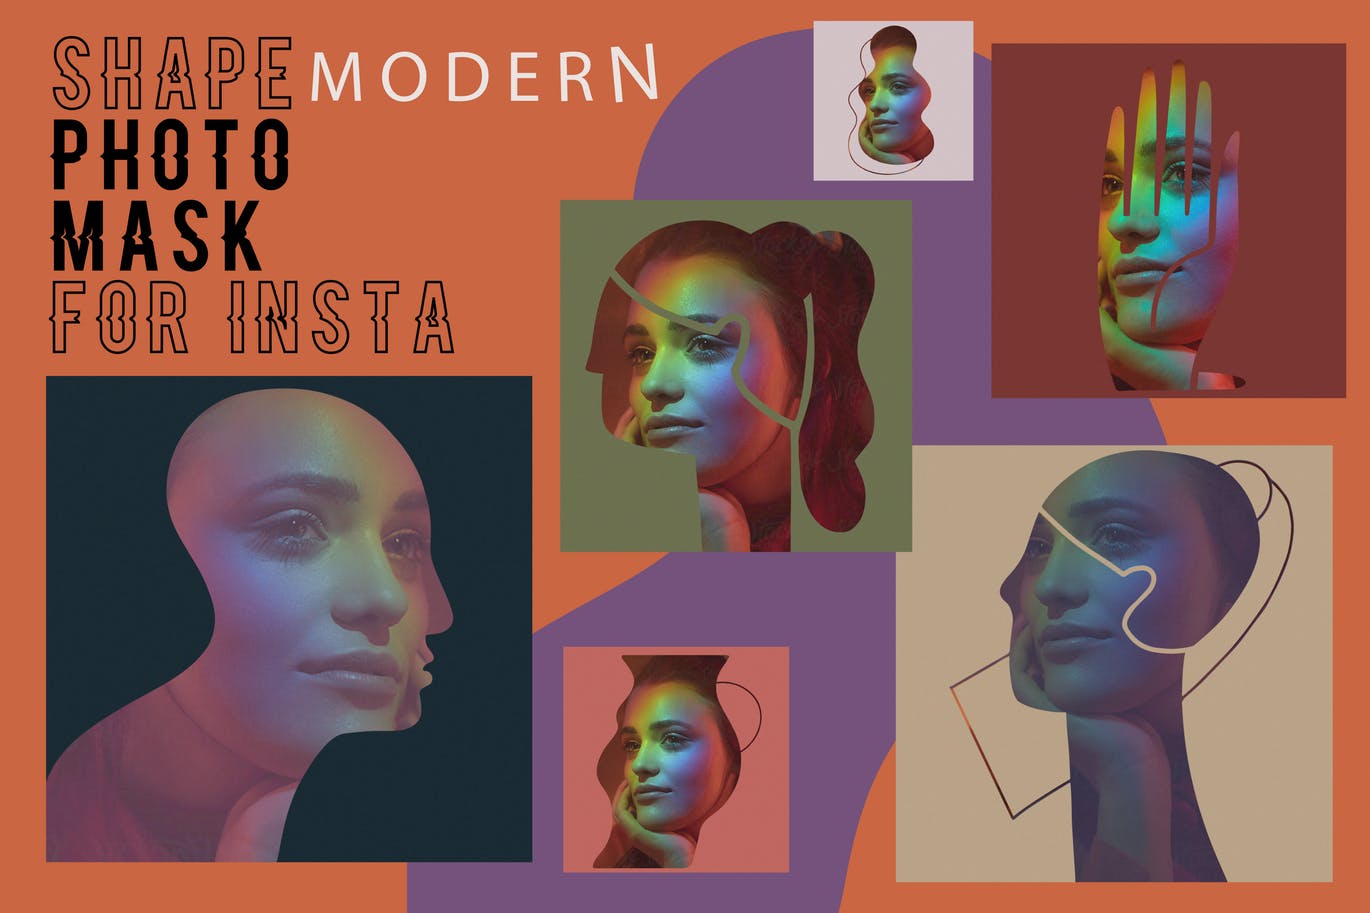 现代艺术剪影风格Instagram贴图设计PSD模板素材库精选 Modern shape photo mask for Insta插图